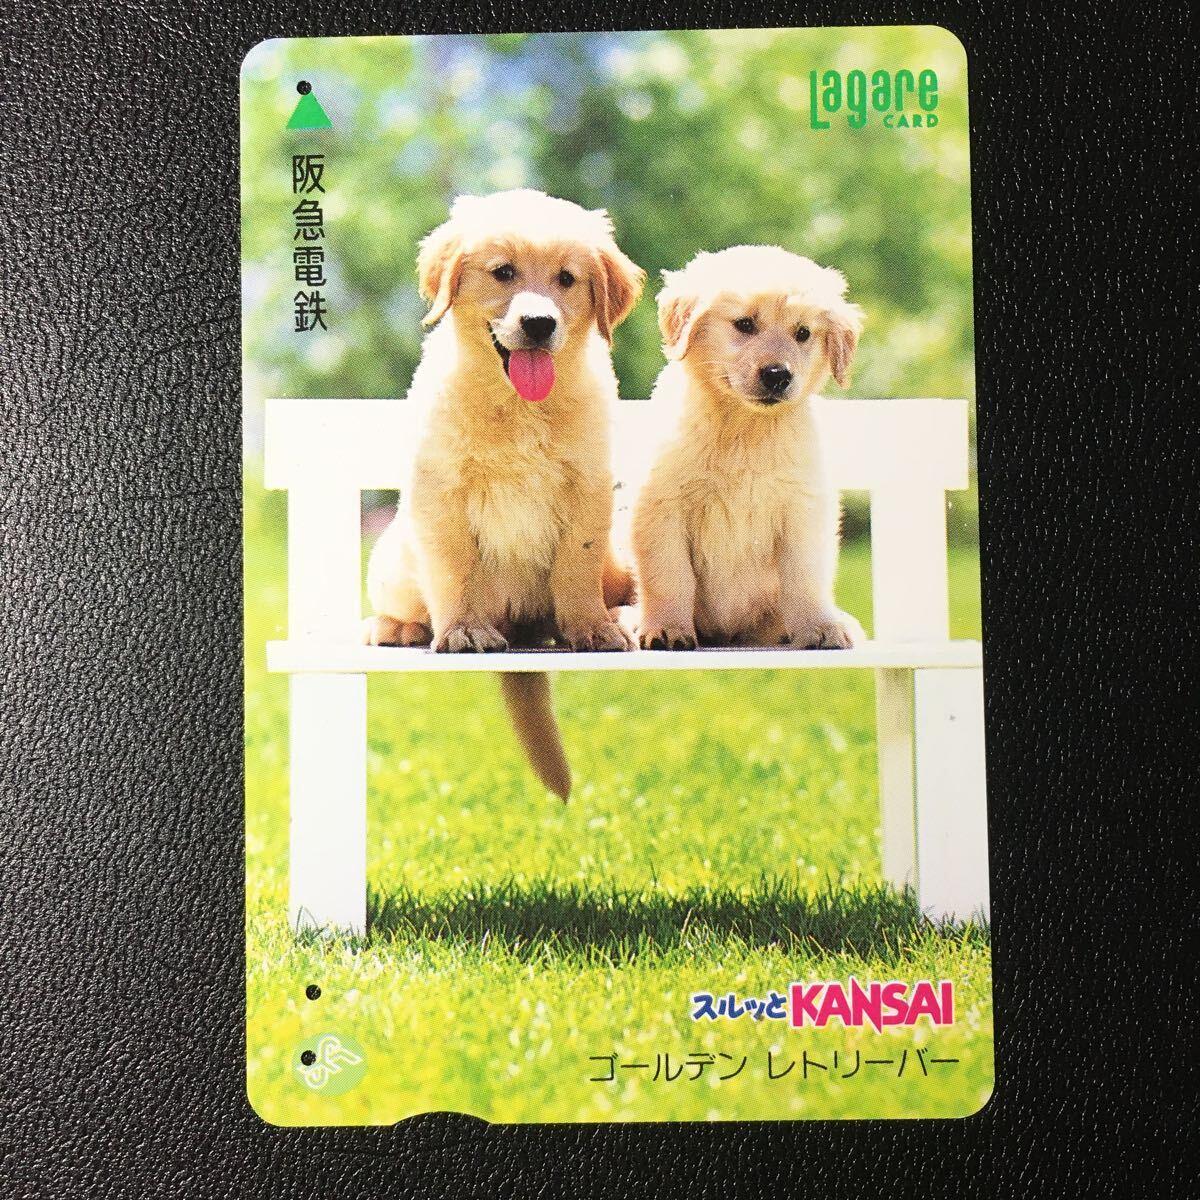 1995年10月15日発売柄ー子犬シリーズ「ゴールデンレトリーバー」後年再販第二版ー阪急ラガールカード(使用済スルッとKANSAI)_画像1